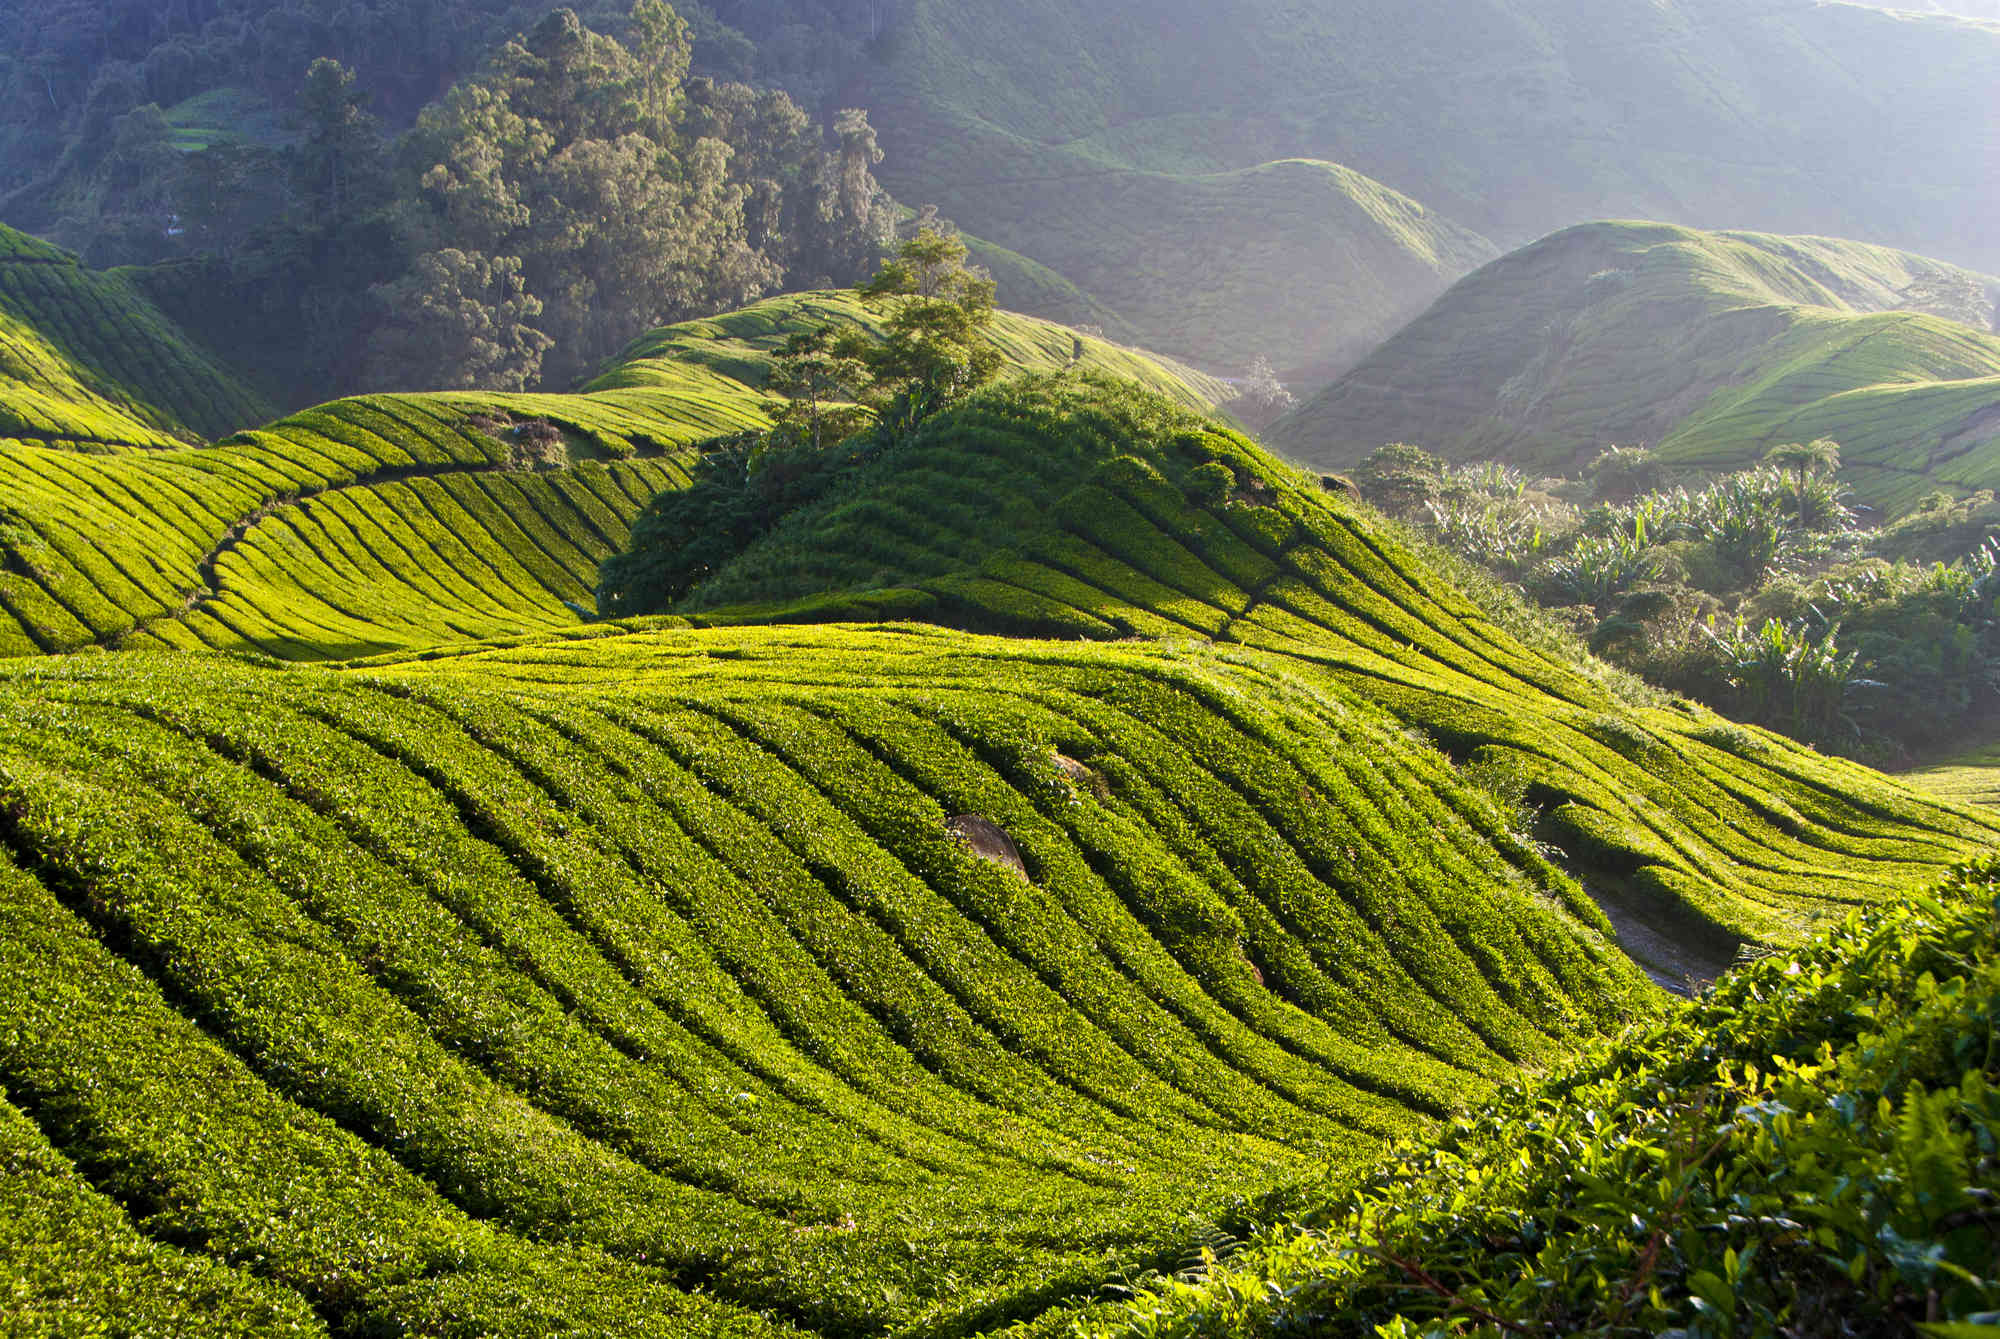 Visit tea plantations in Asia